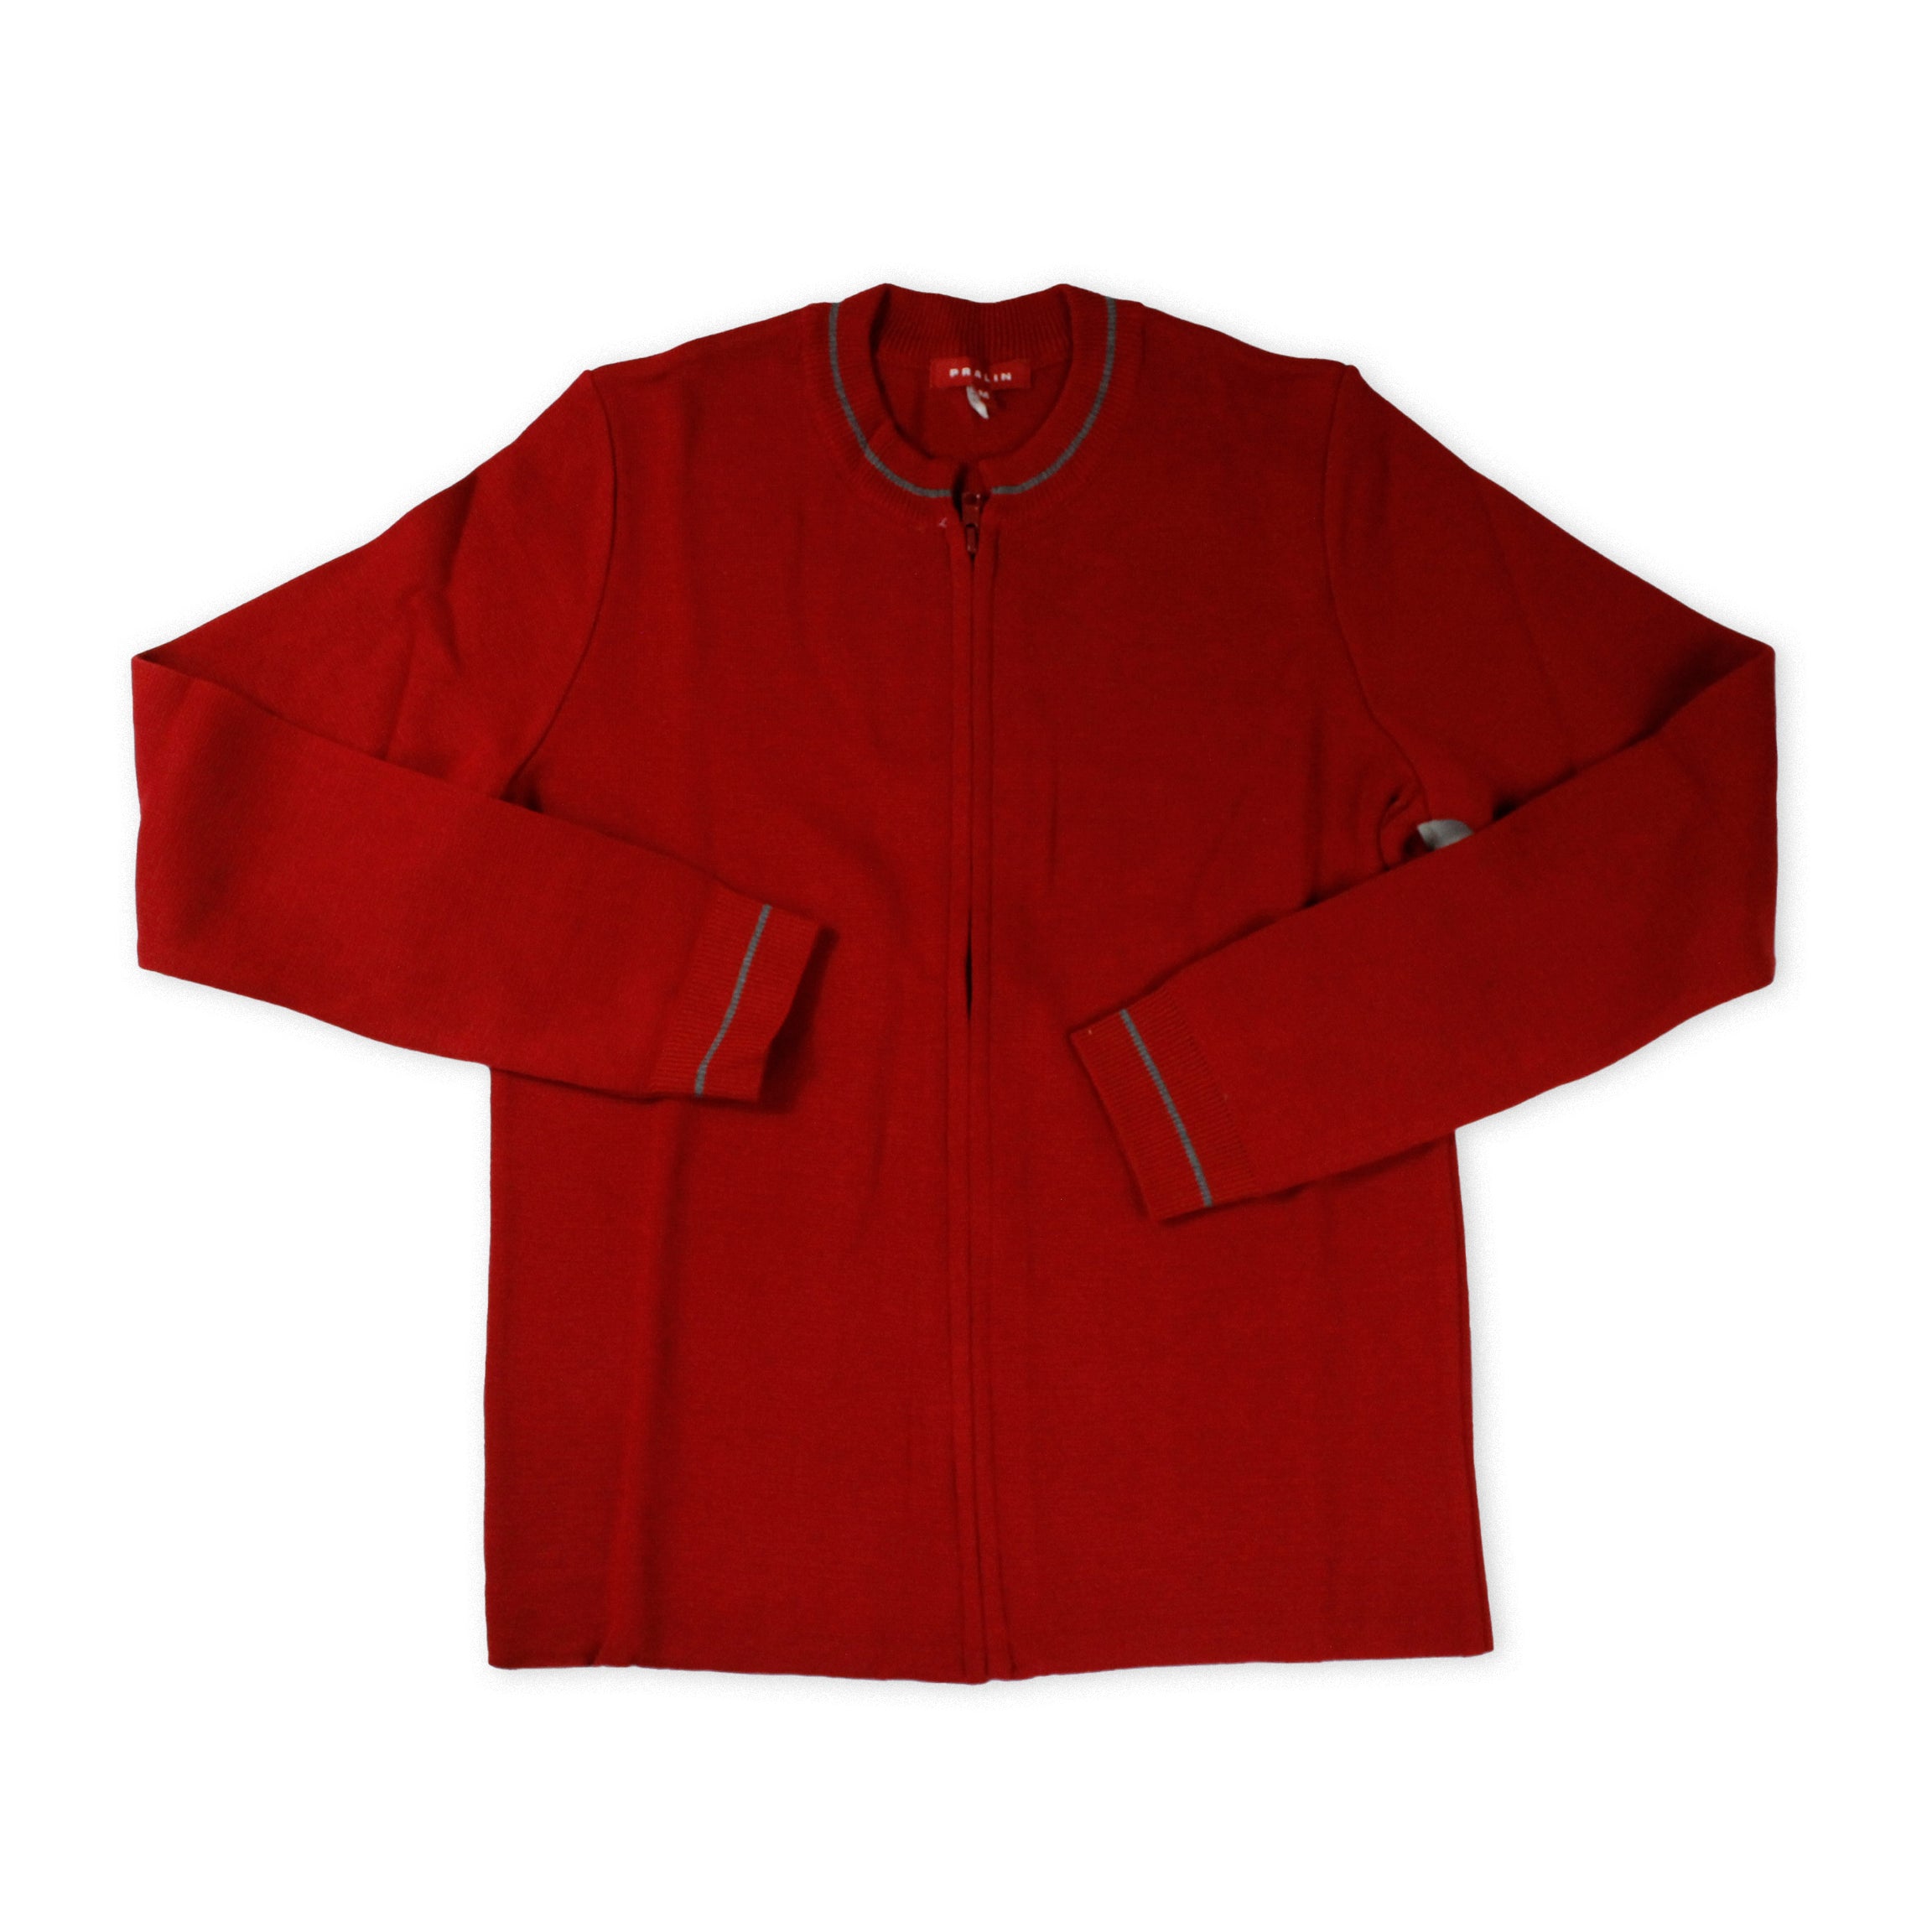 Suéter Rojo con Zipper de Mujer - Talla M